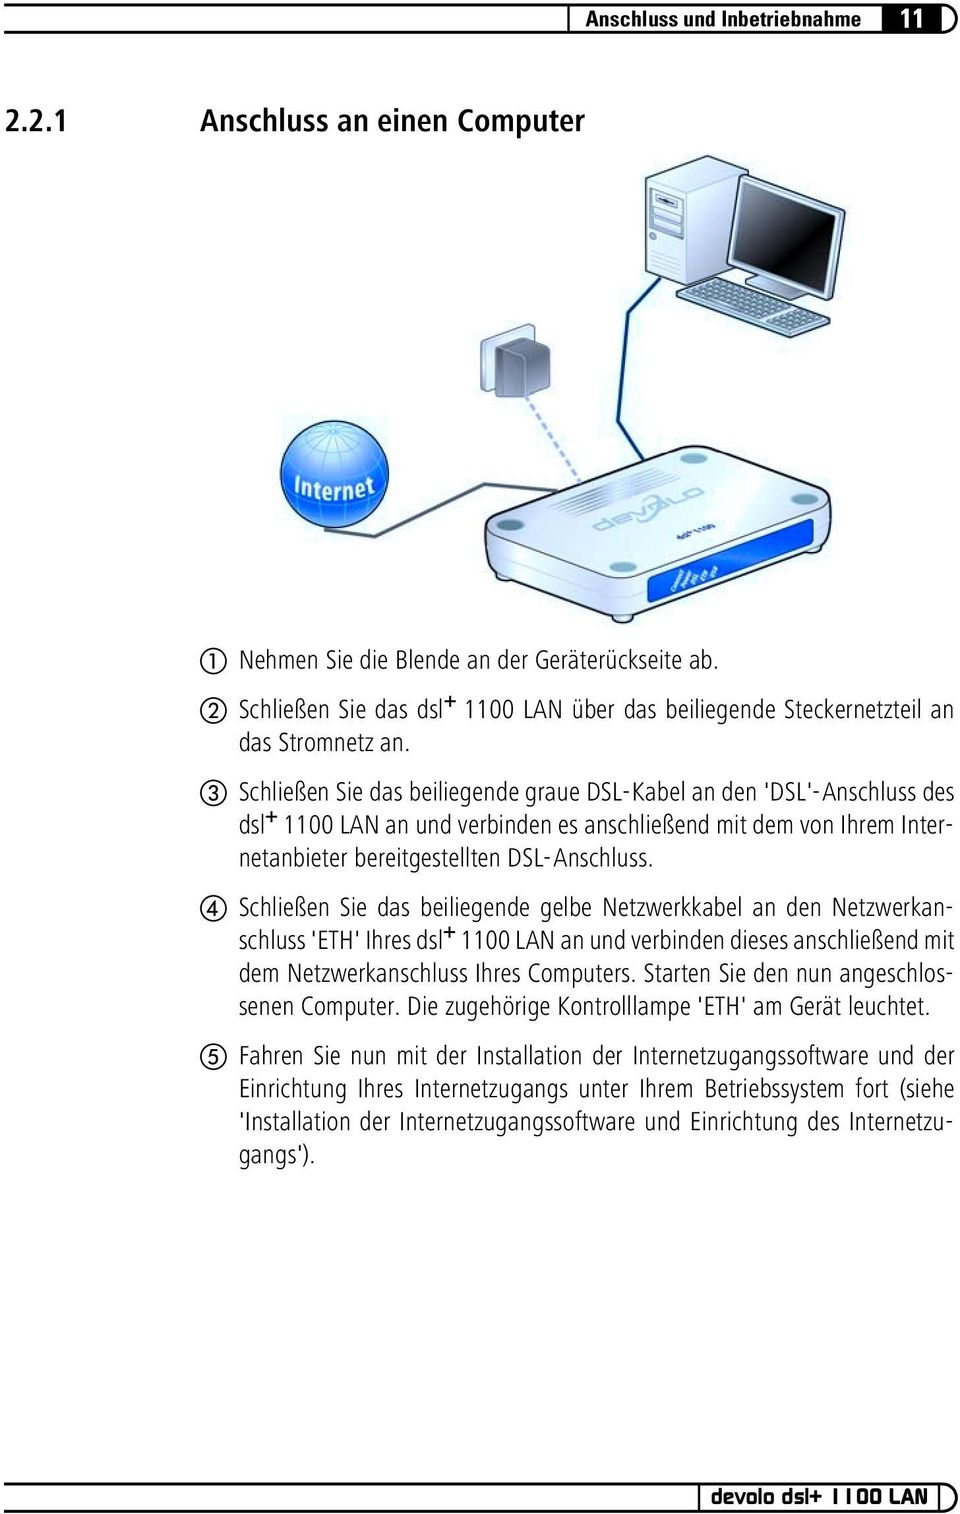 Schließen Sie das beiliegende graue DSL-Kabel an den 'DSL'-Anschluss des dsl + 1100 LAN an und verbinden es anschließend mit dem von Ihrem Internetanbieter bereitgestellten DSL-Anschluss.